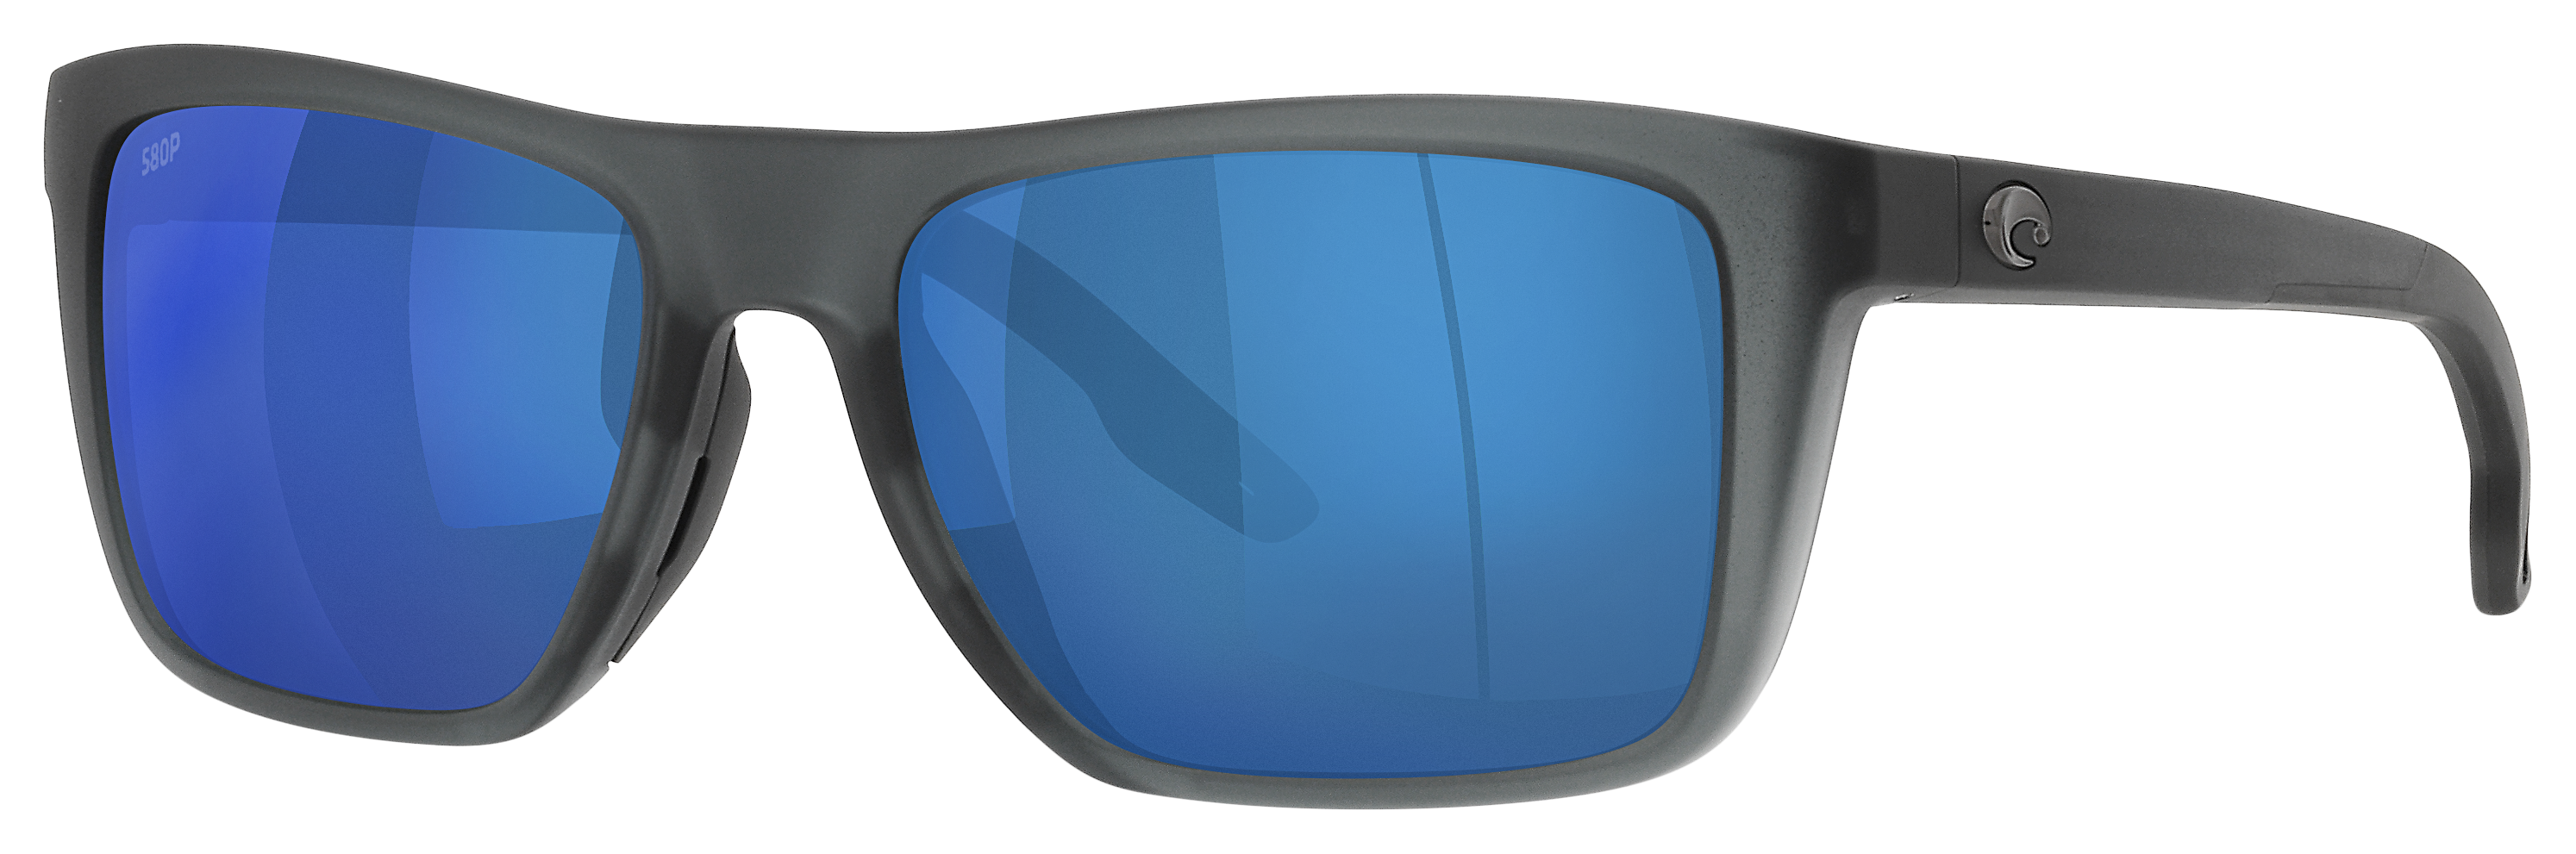 Lentes Snow - Castor Sunglasses